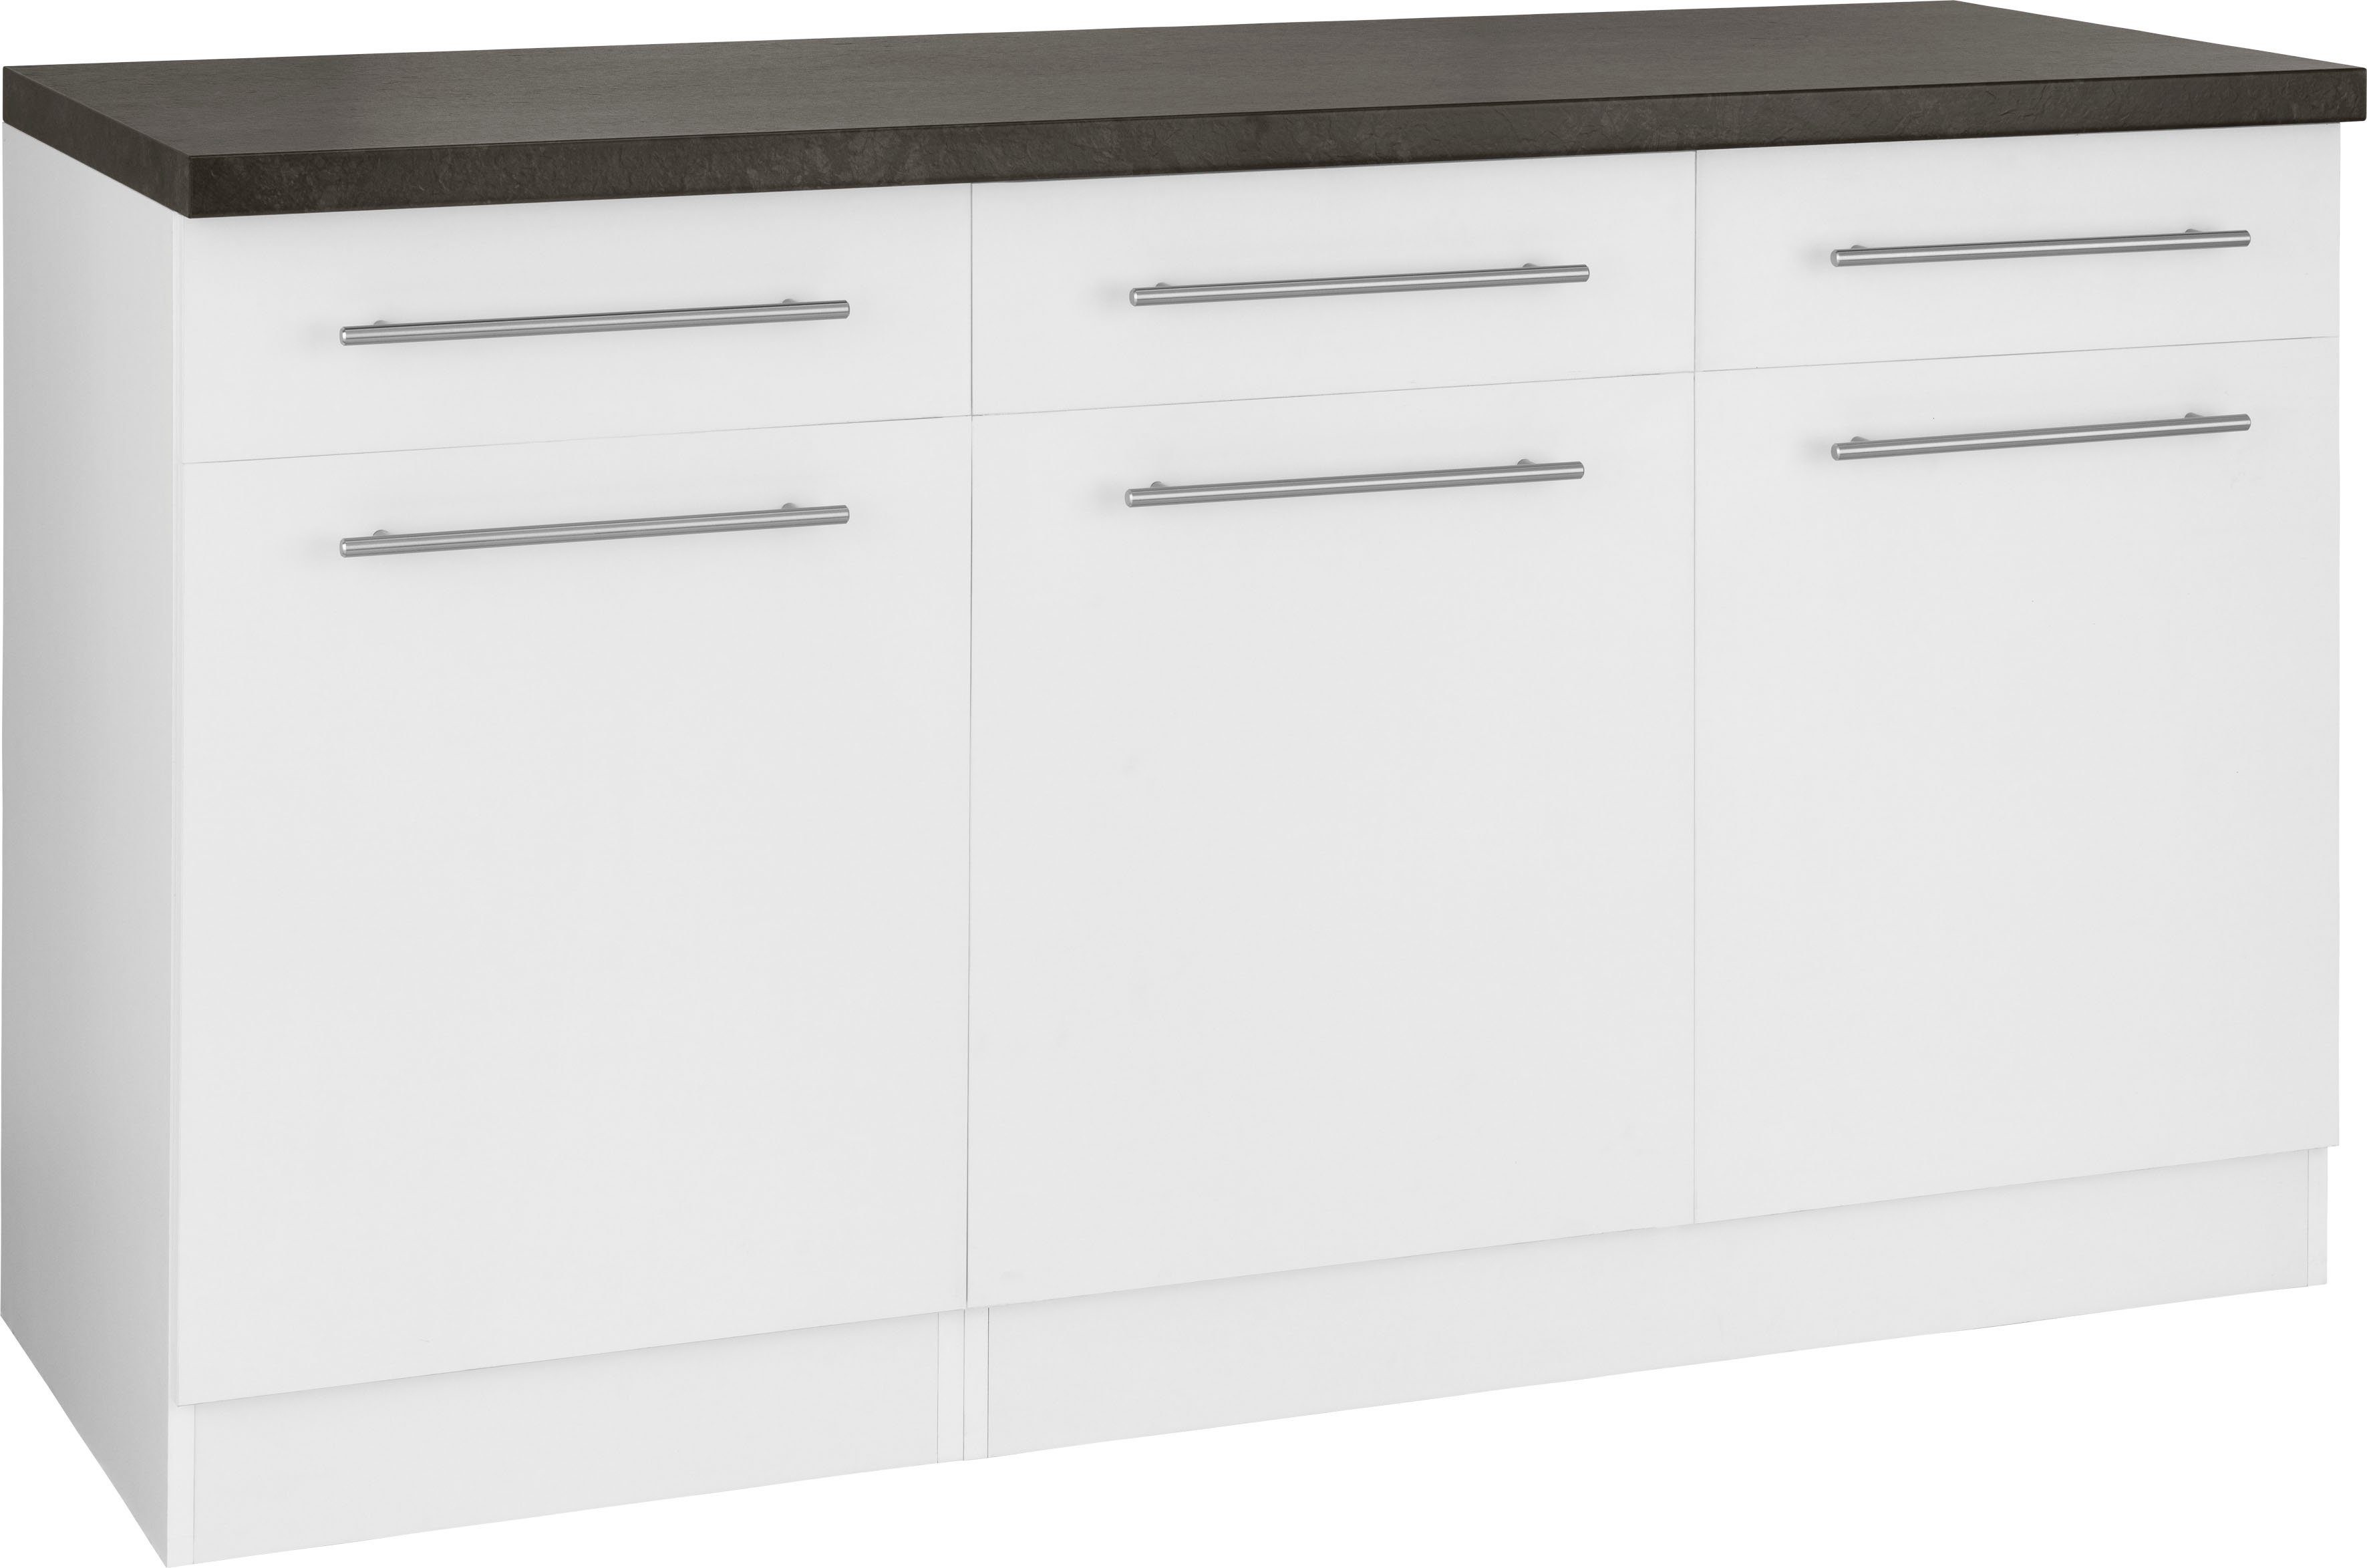 wiho Küchen Unterschrank Unna 150 cm breit weiß/granit schwarz | Weiß